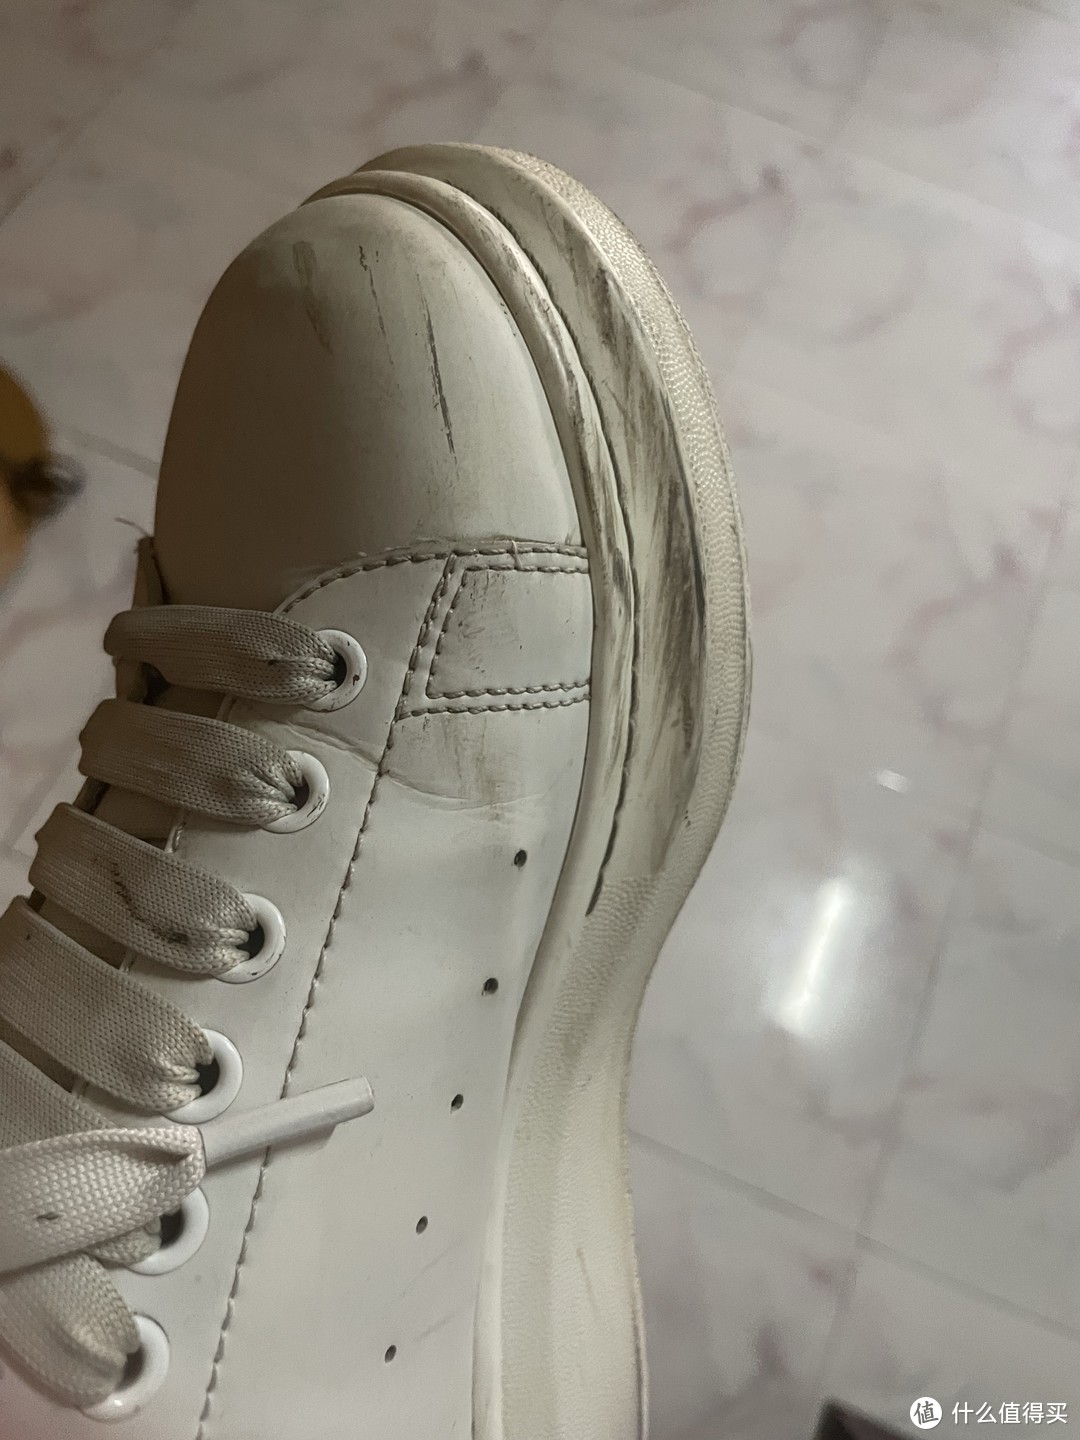 当你的鞋出现这种黑色划痕的话，该怎么办？